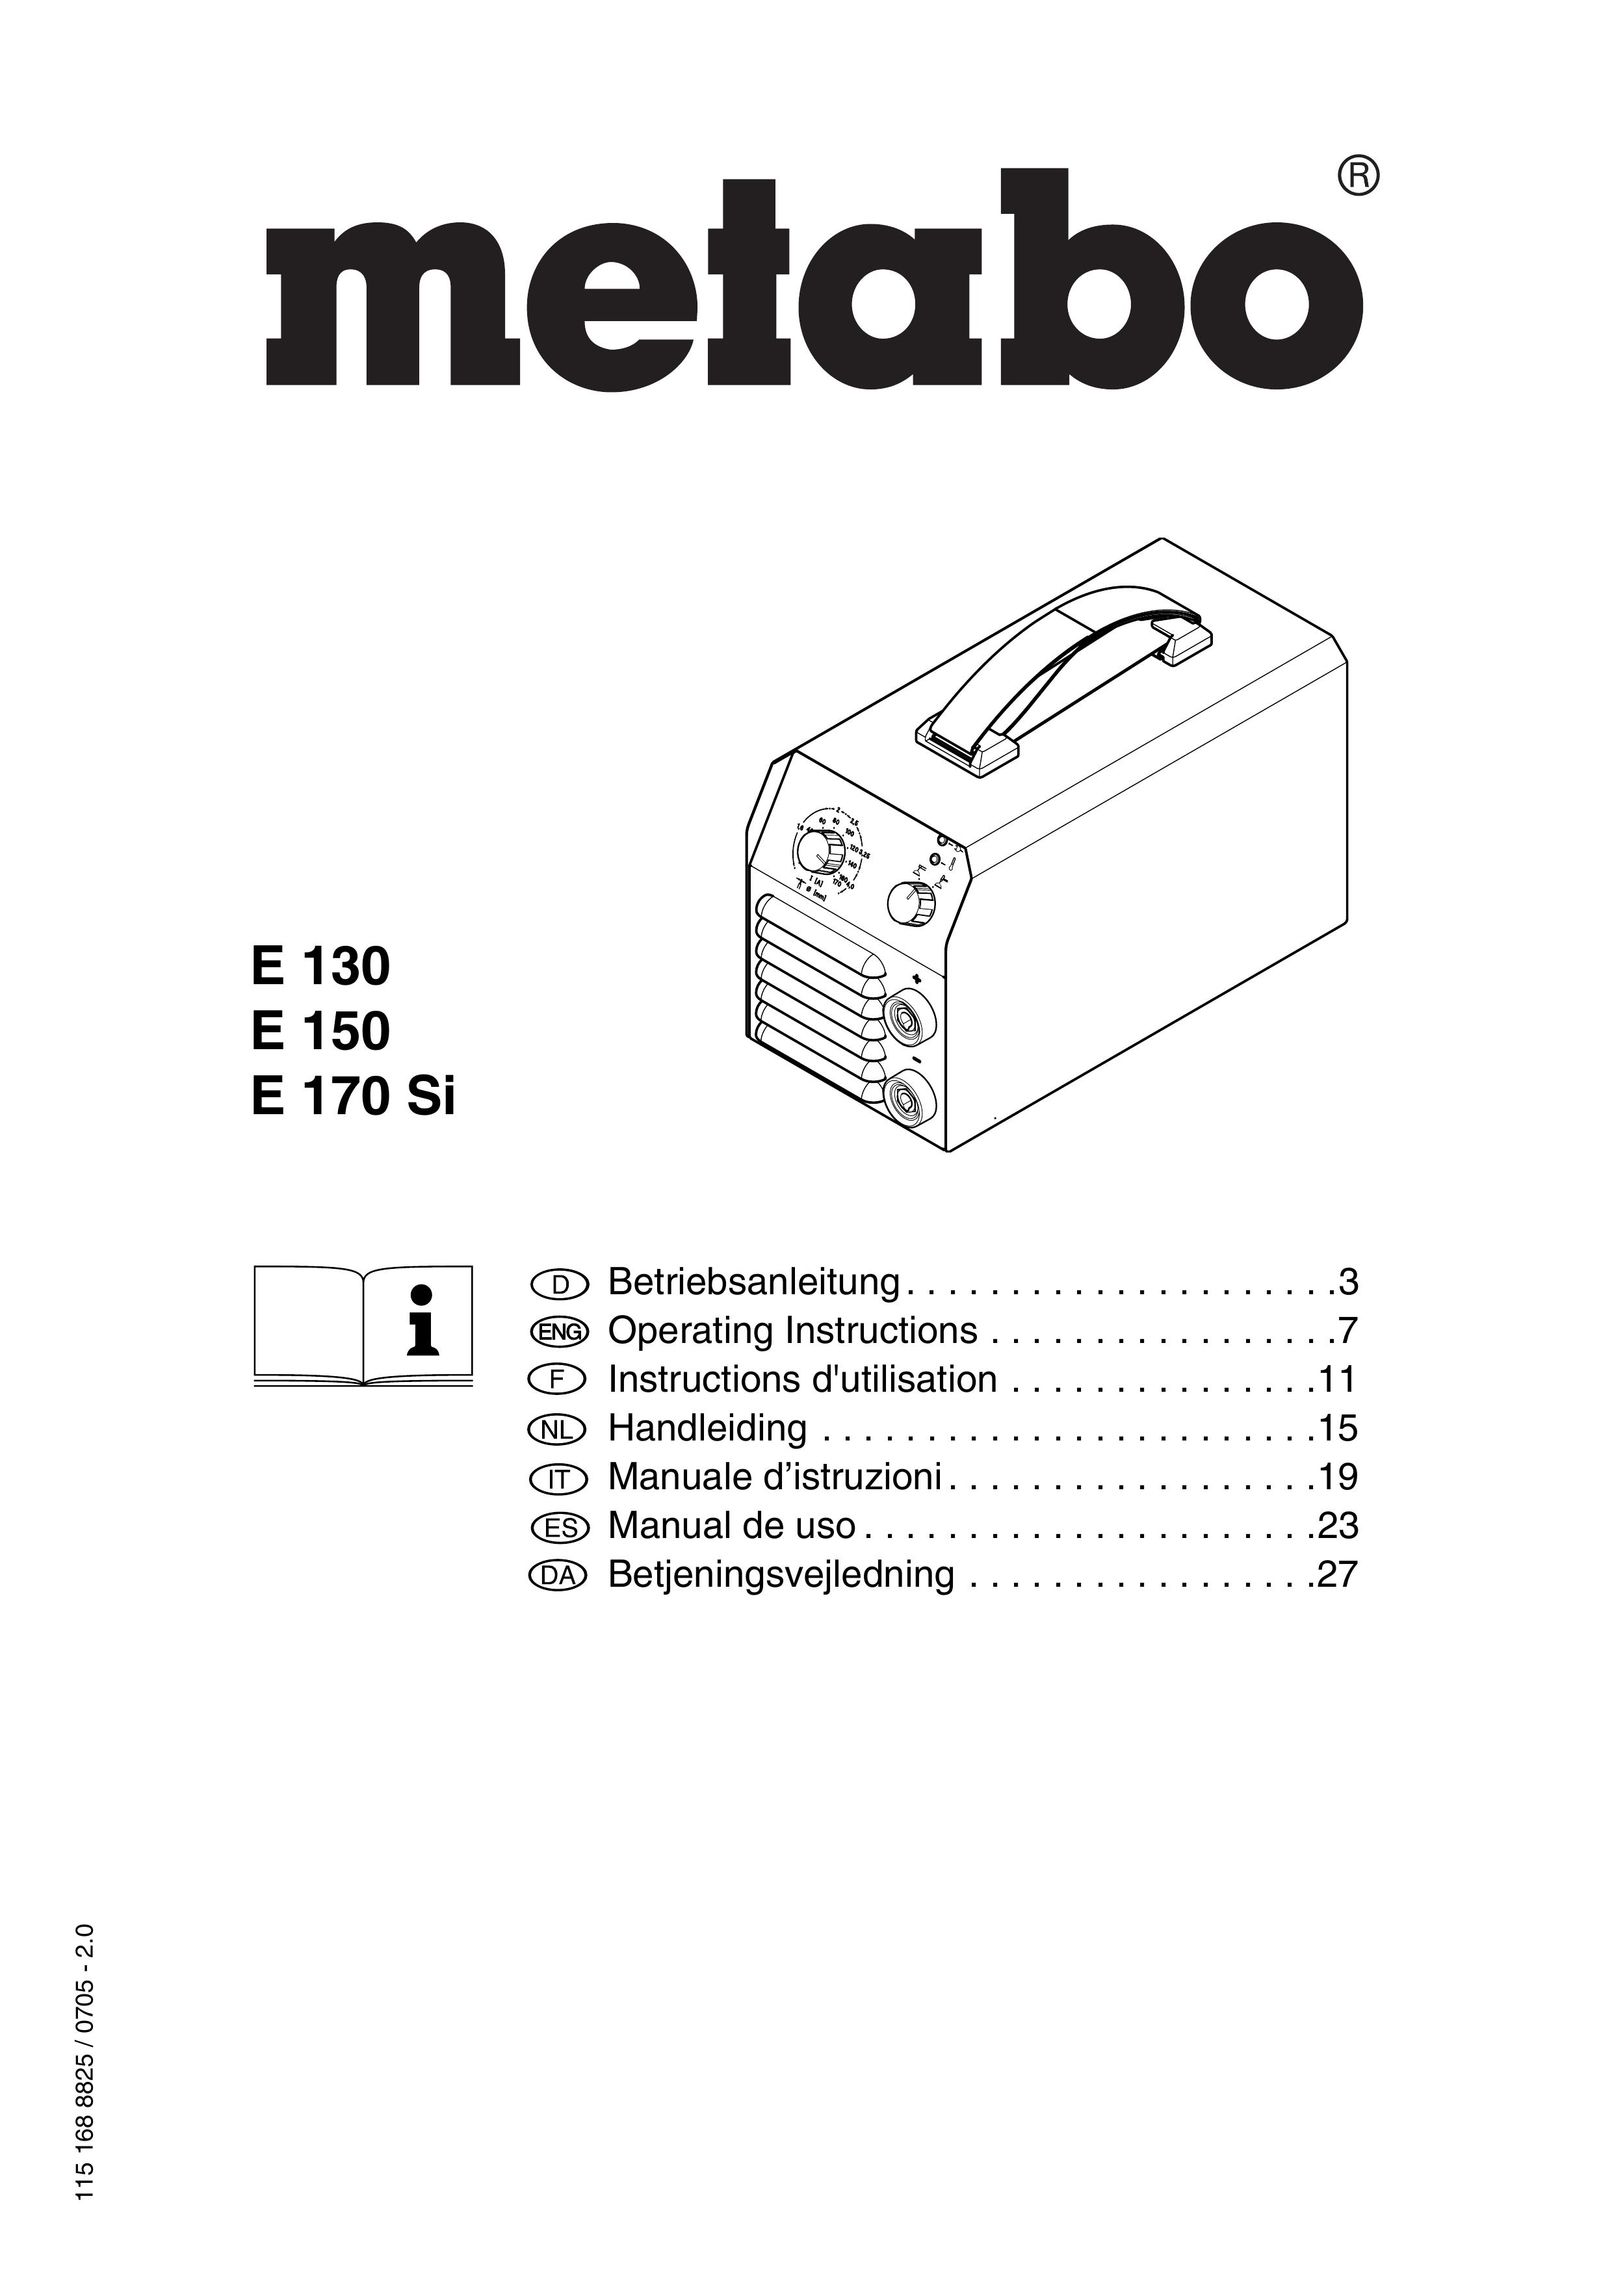 Metabo E 150 Welding System User Manual